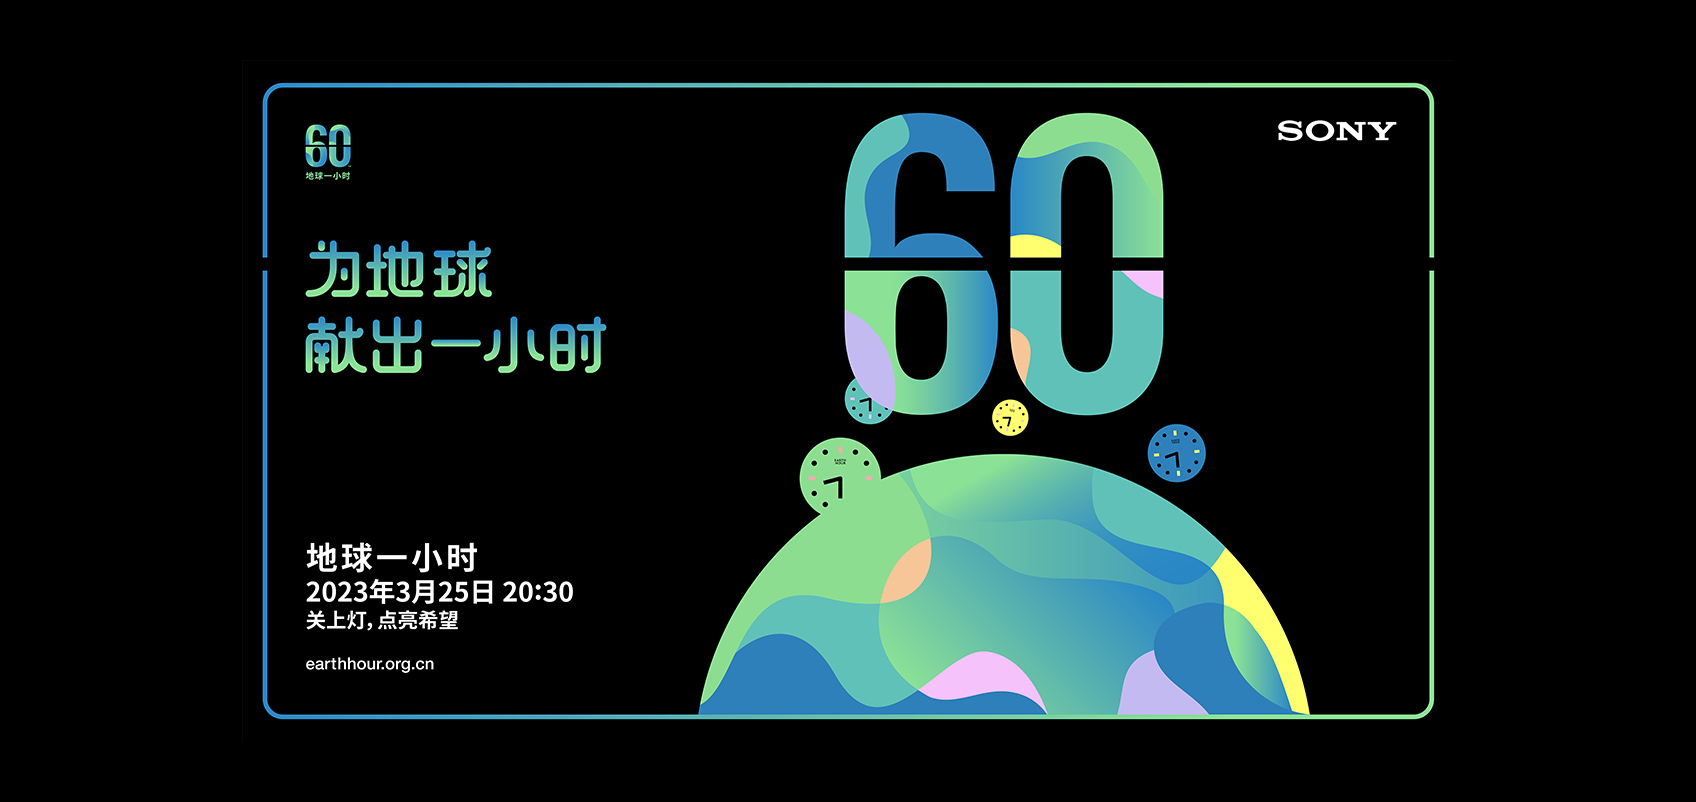 60という数字と、地球が大きく描かれた中国語のポスター